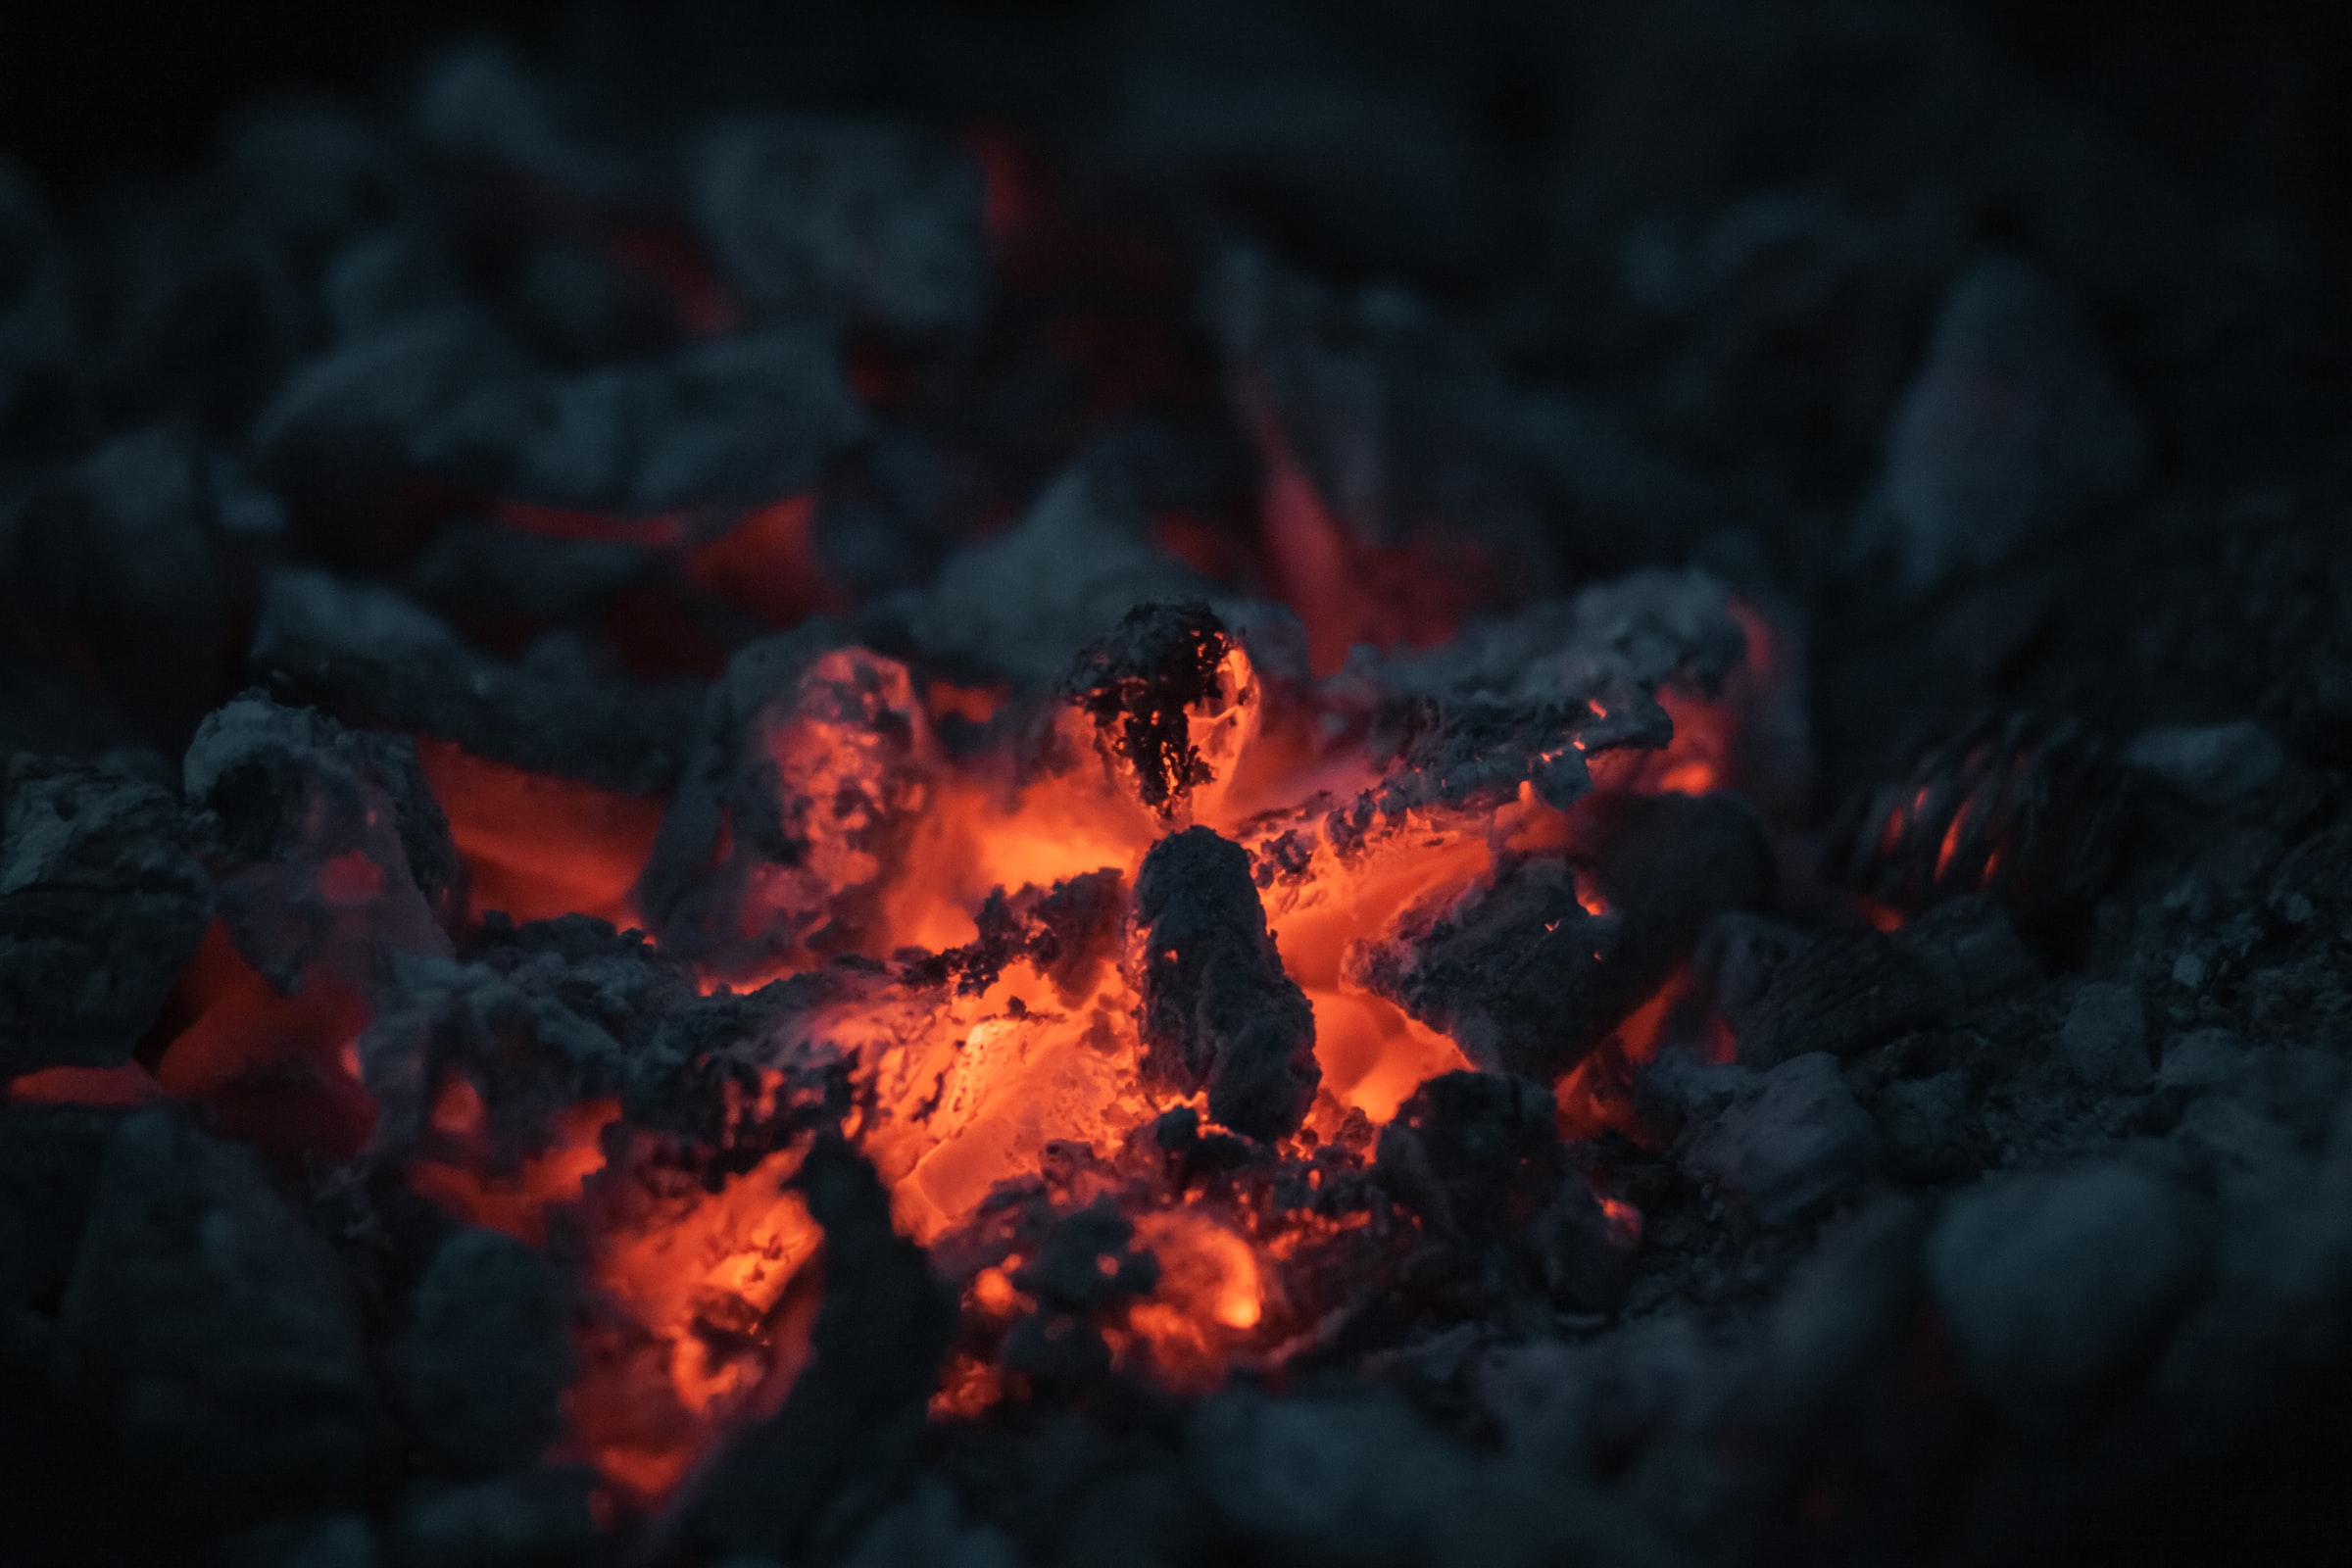 dark, fire, bonfire, coals